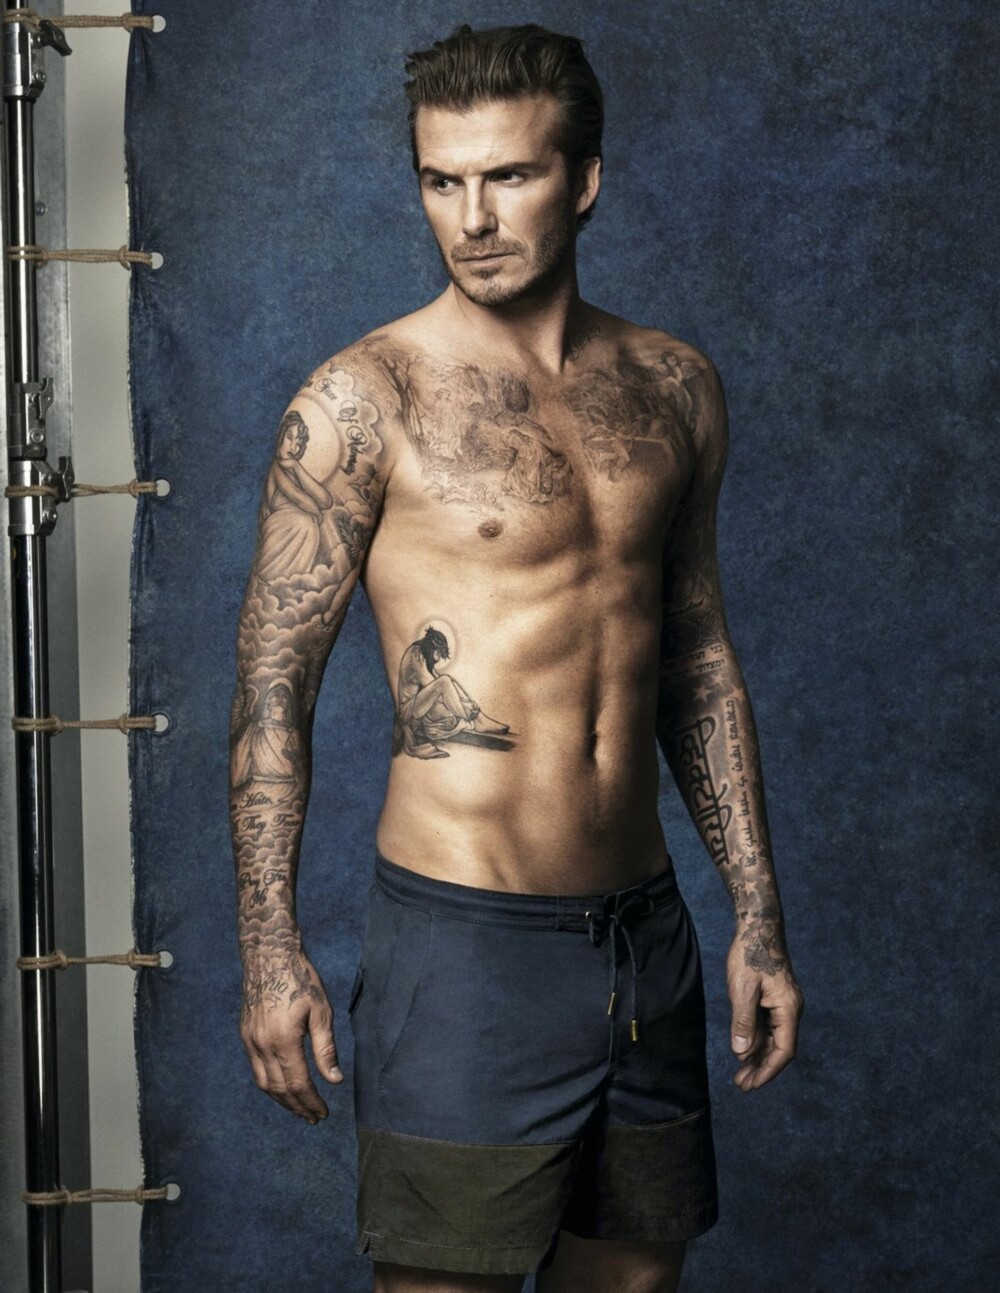 MODELL-FAR: Pappa David Beckham var best kjent som fotballspiller, men har etter hvert også fått en stor modellkarriere.